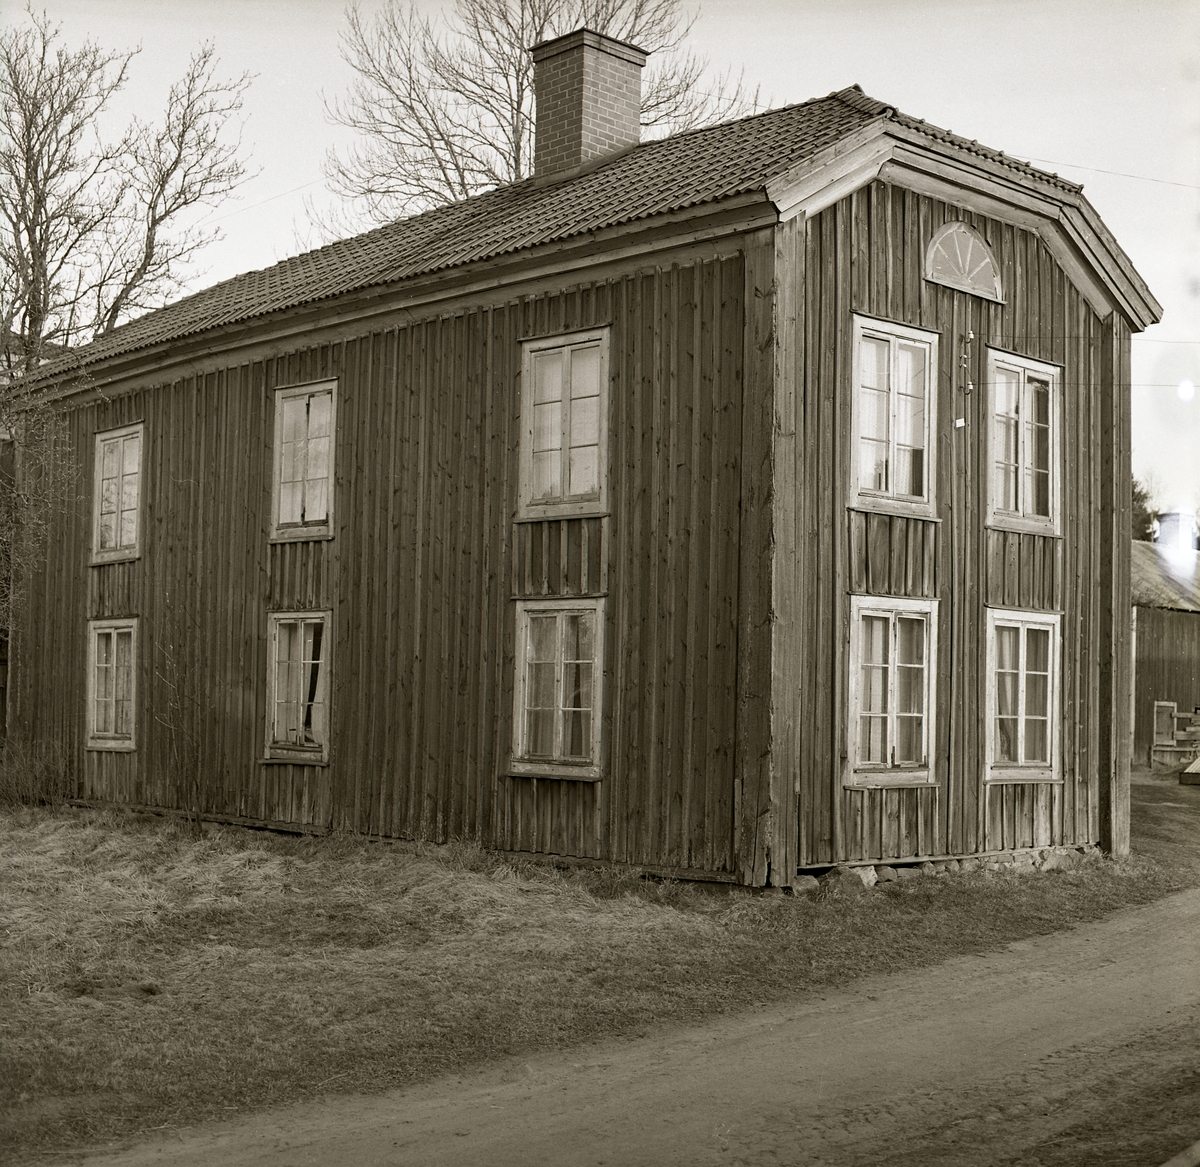 Baksidan av en ganska förfallen gammal hälsingegård, Söderala 1973. Timmerhus klätt med träpanel. Valmat tak med tegel. Fönster med spröjs och sex rutor och längst upp ett halvmånefönster. Vid gaveln går en smal grusväg.